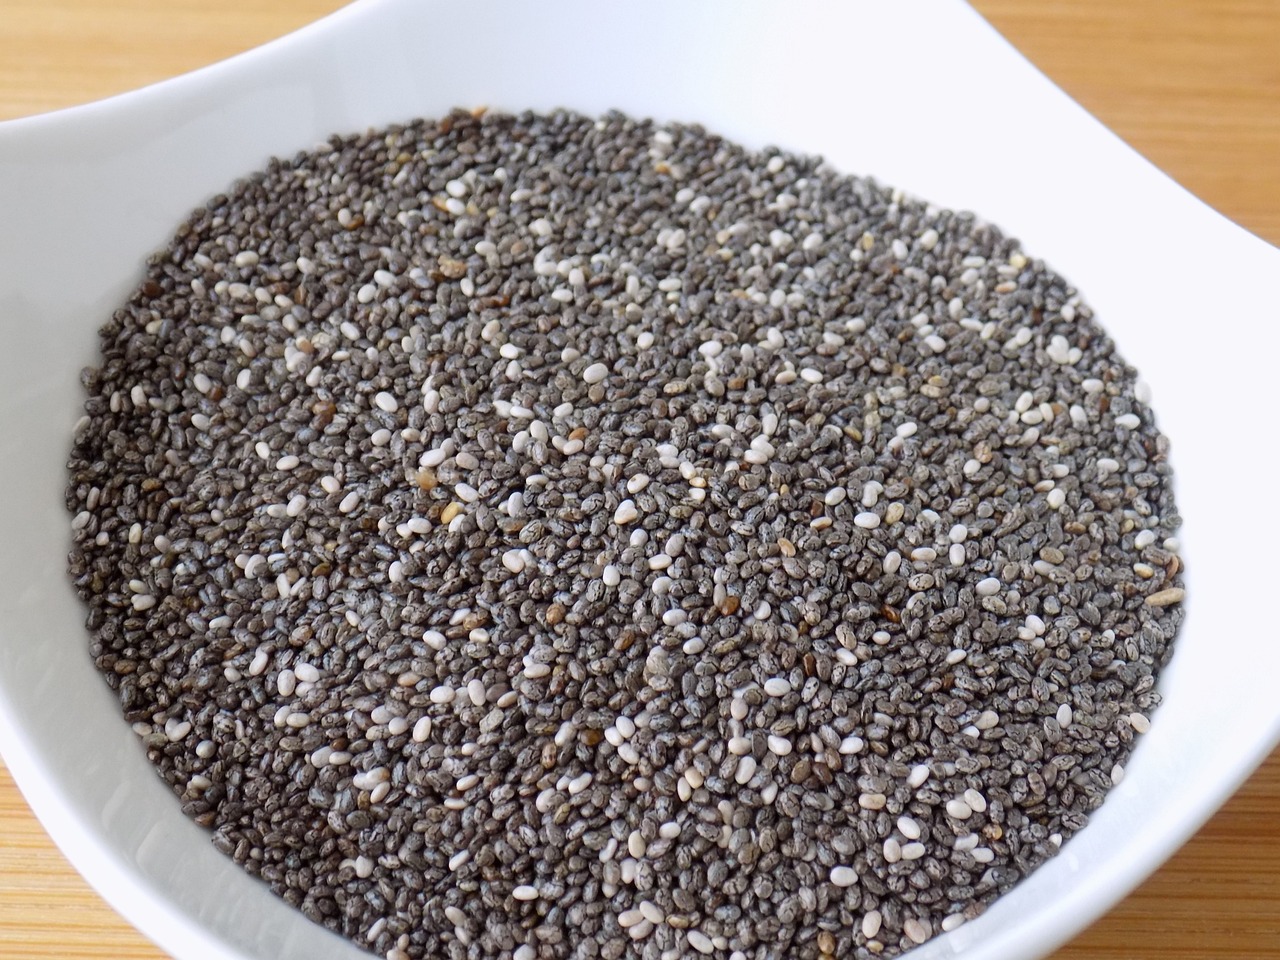 Jak przygotować pyszne i zdrowe danie z nasion chia?